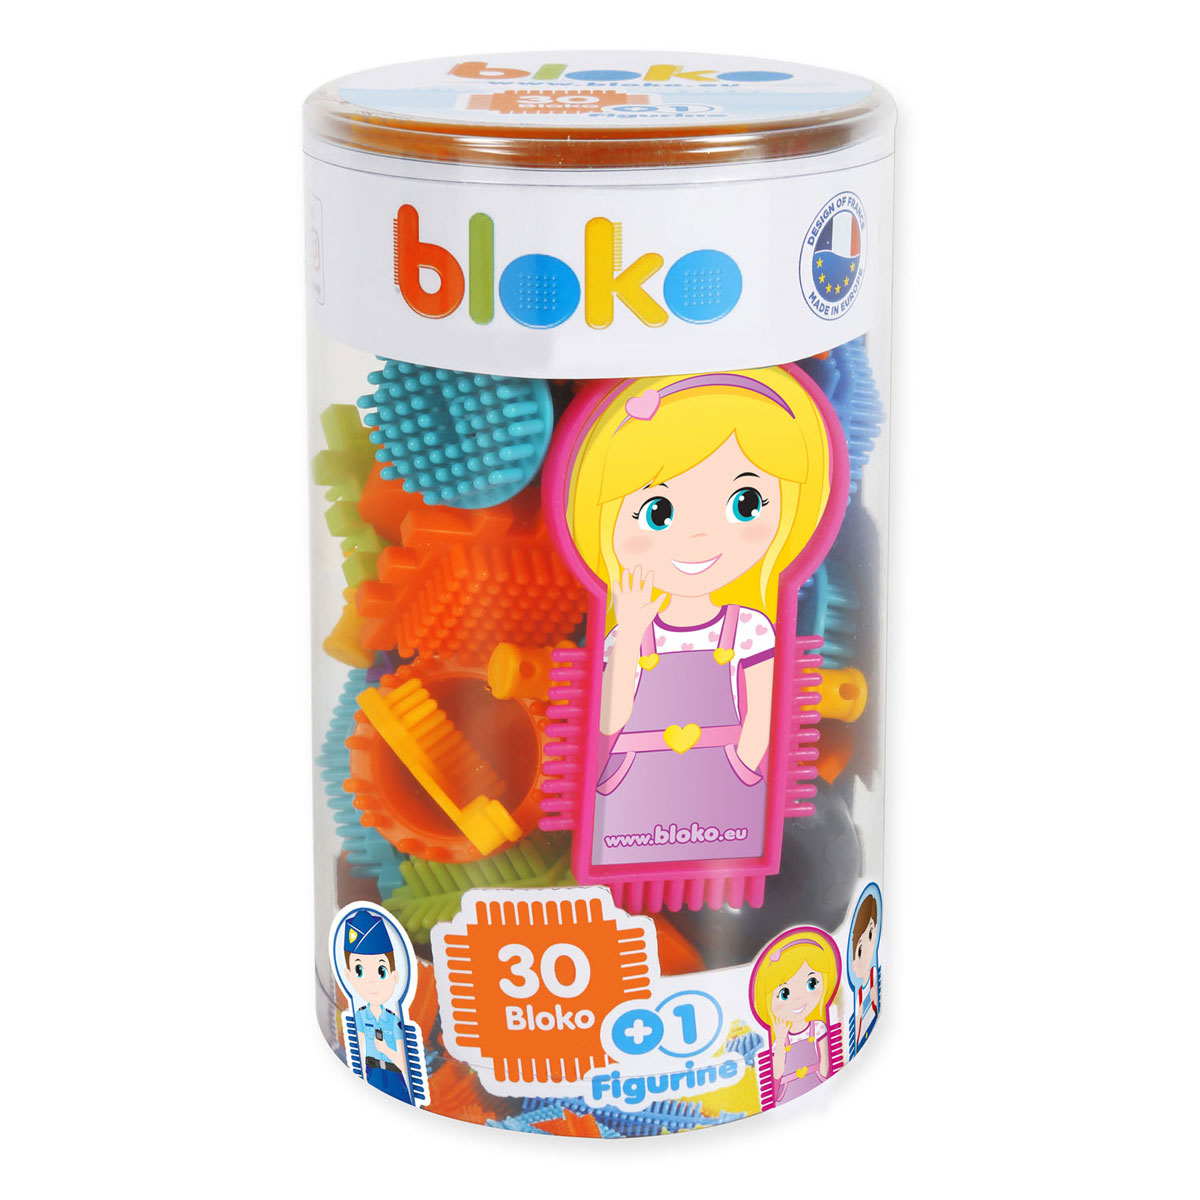 Bloko - tube met 30 bouwstukken + 1 speelfiguur - Classic - Bouwset